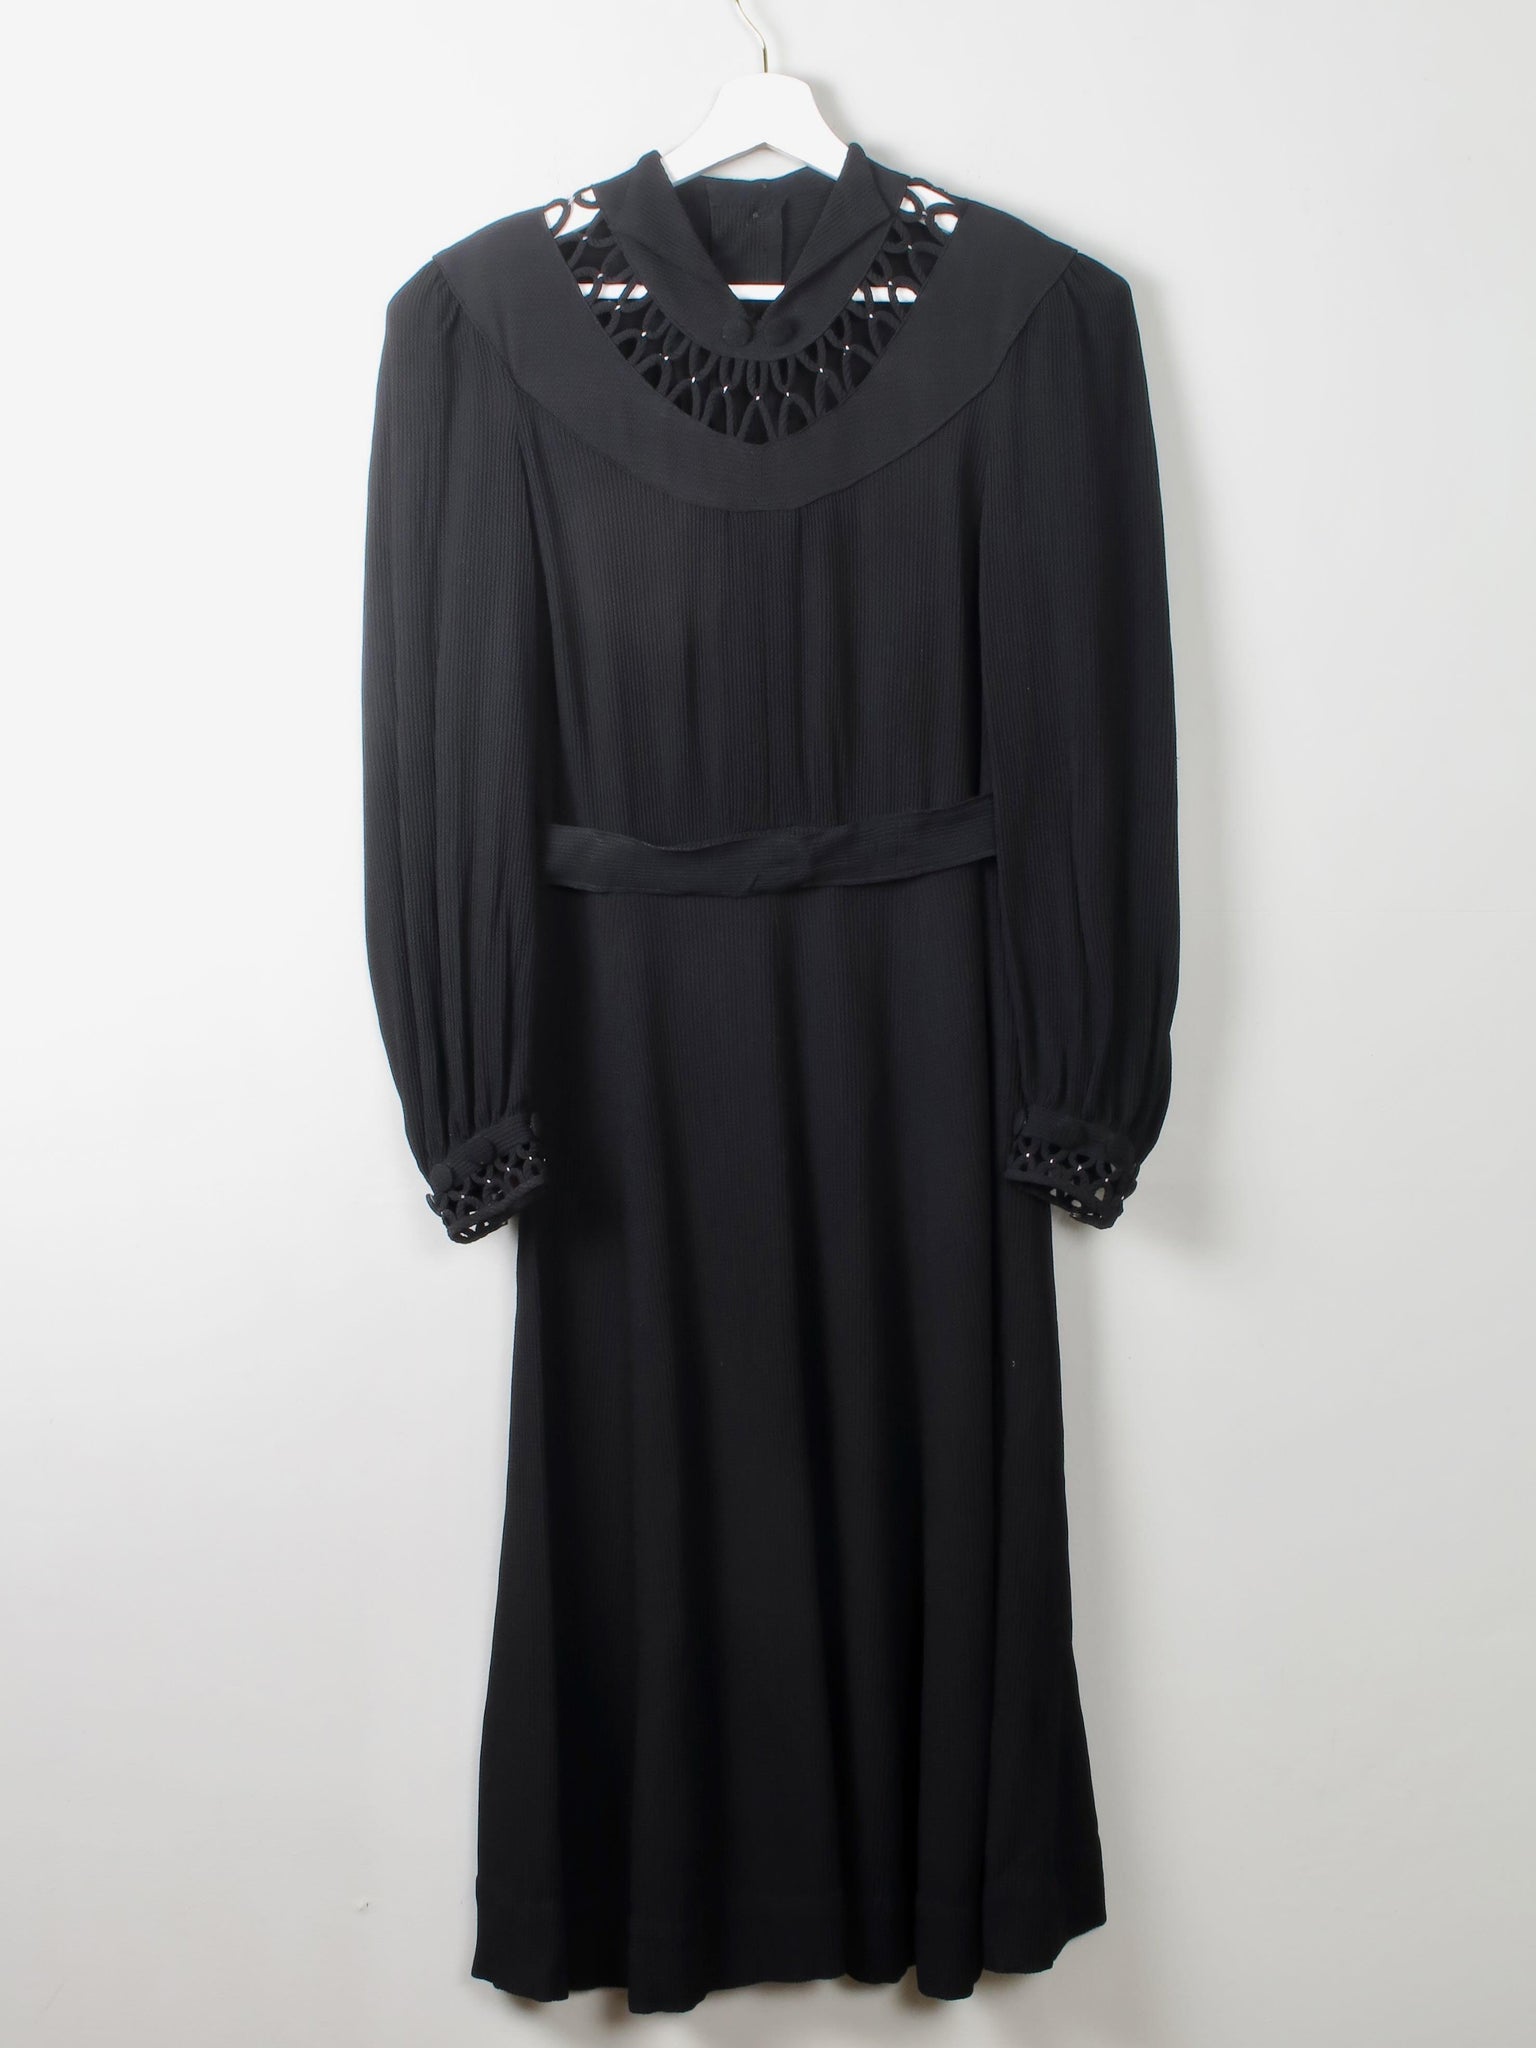 Vintage Black 1940s Dress 8/10 - The Harlequin